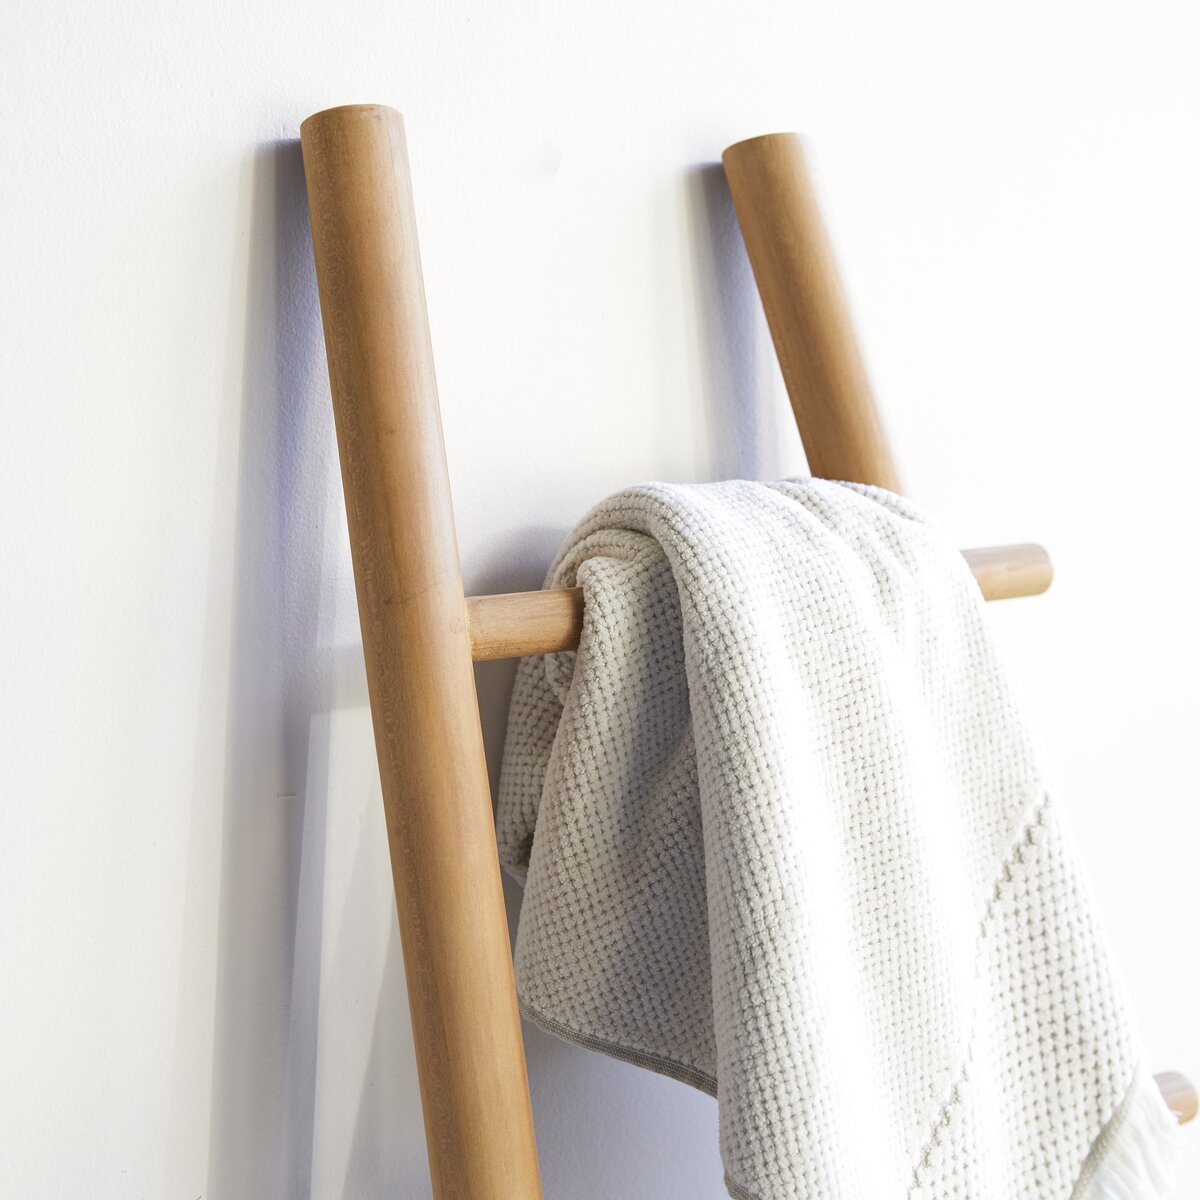 Escalera toallero teca 180x70 color blanco lavado.